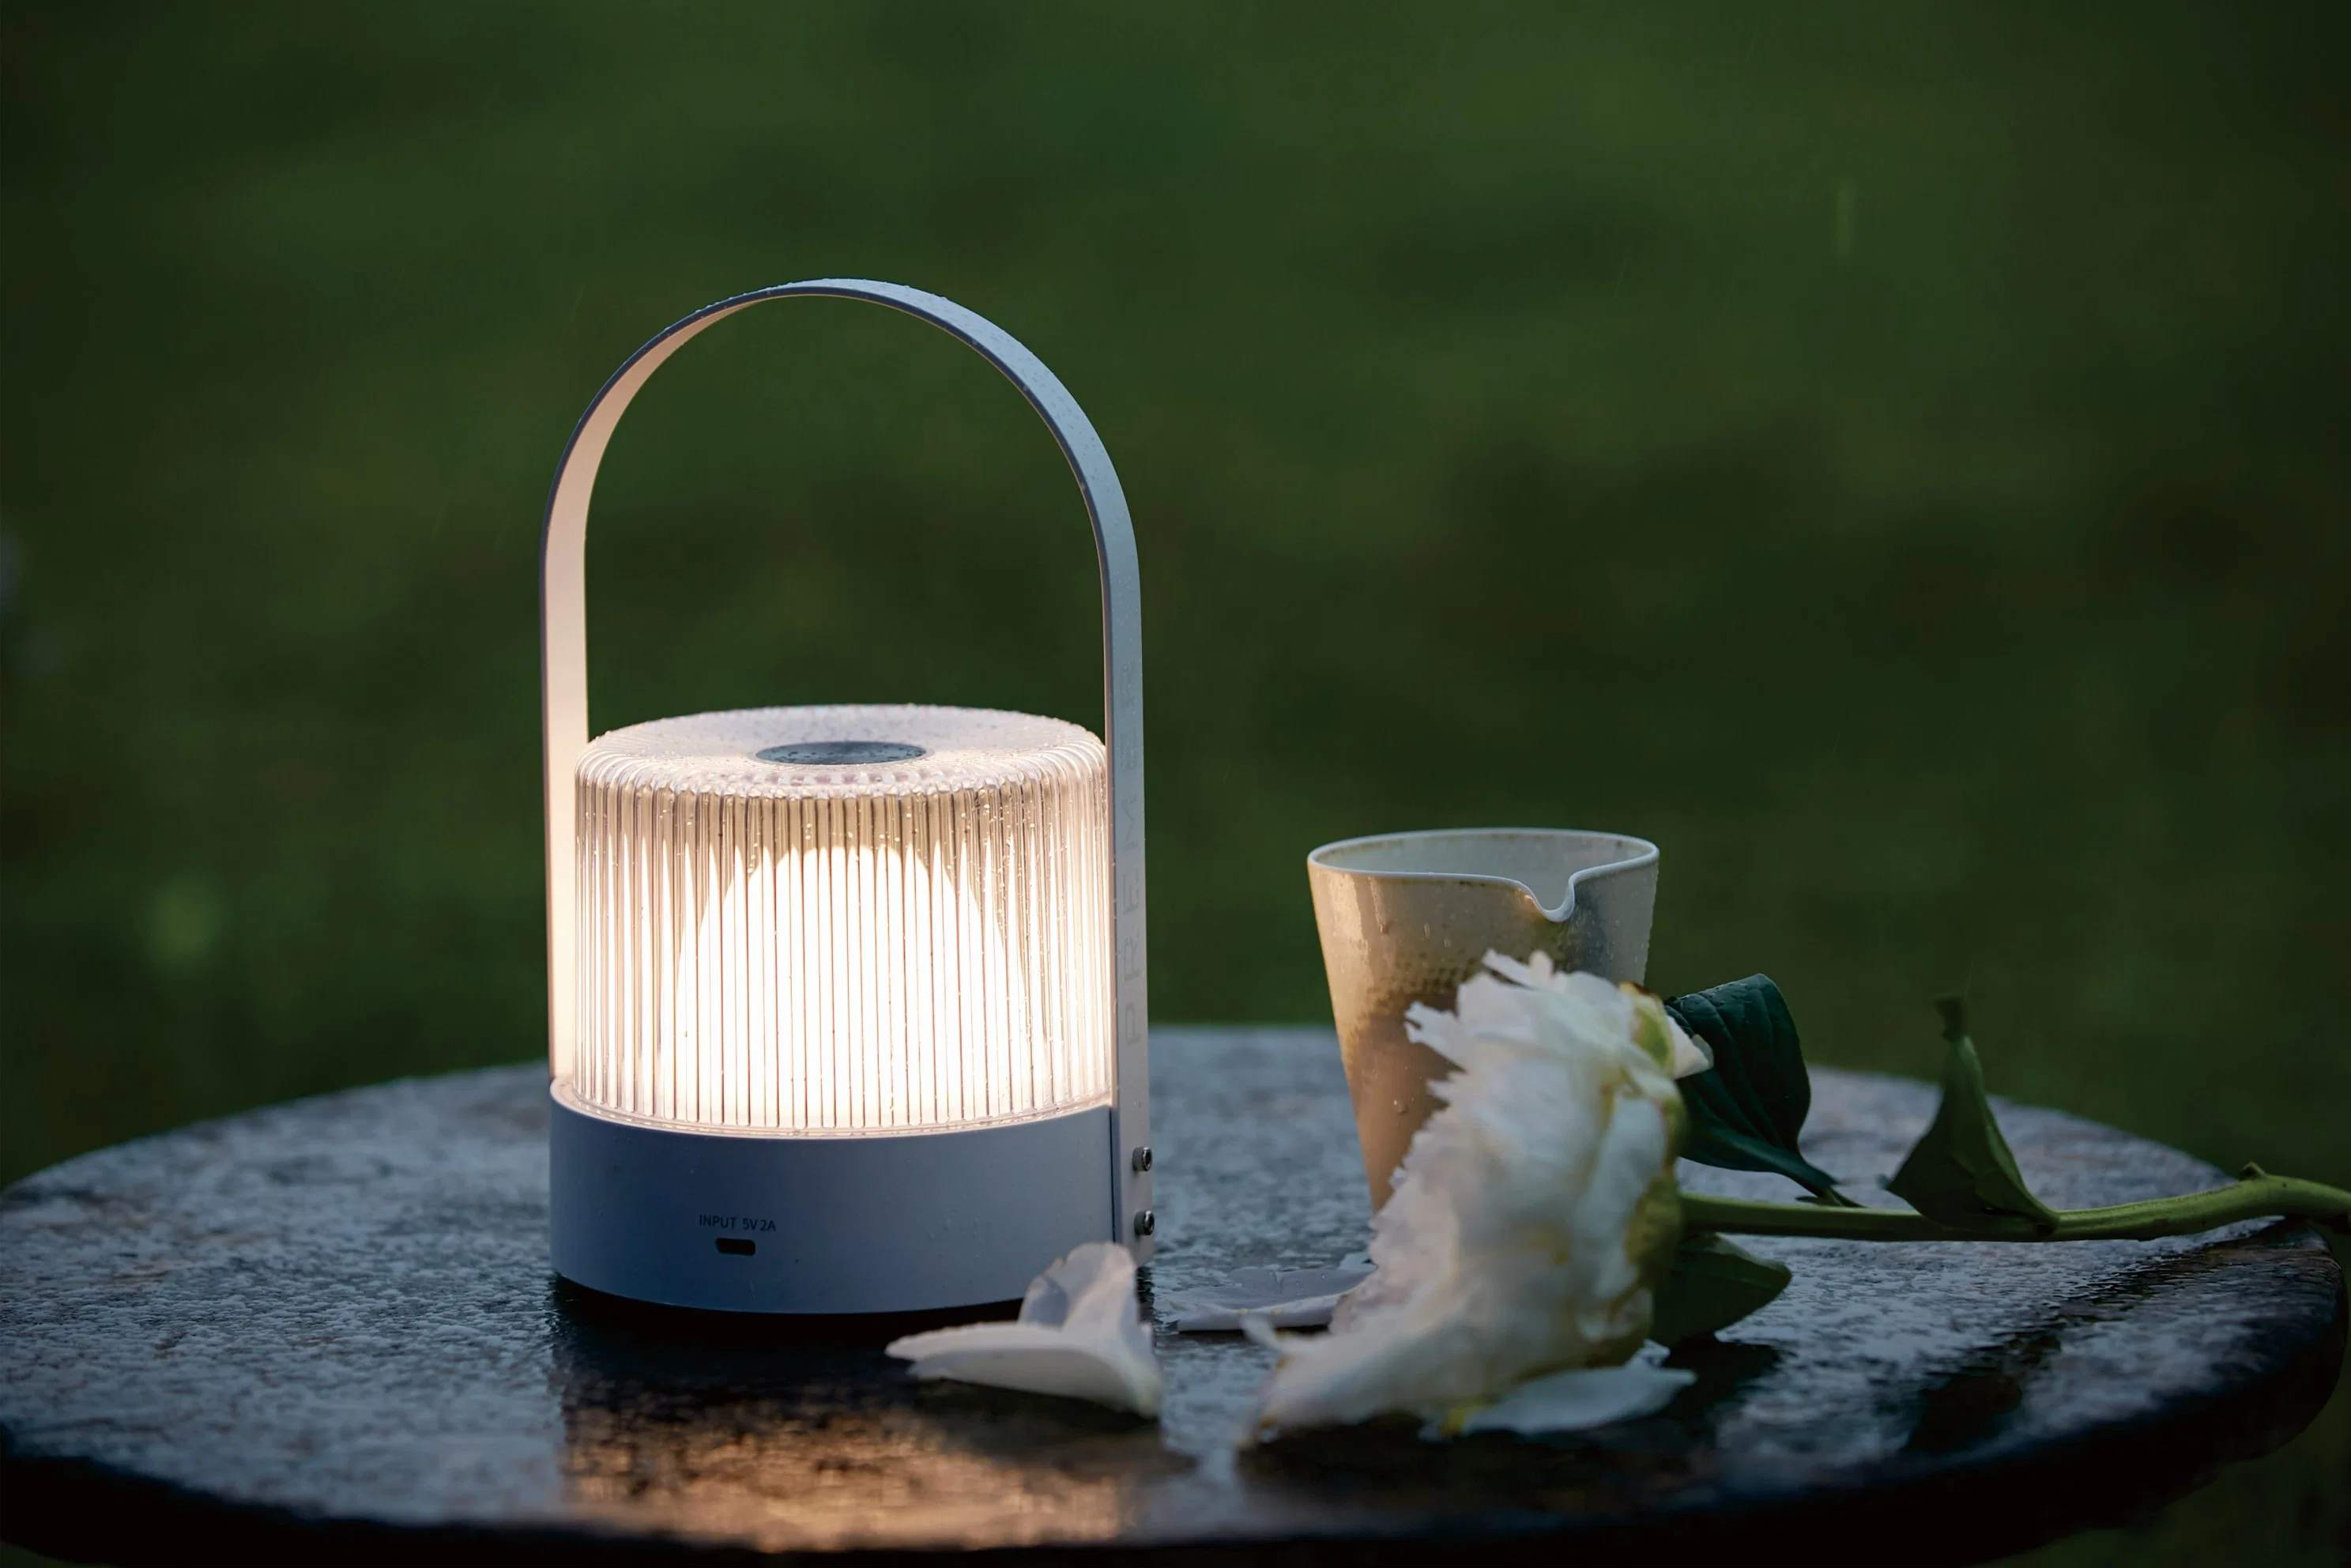 LED de haute qualité de la batterie Portable Rechargeable Camping bedroom livingroom Fashion lampe de table